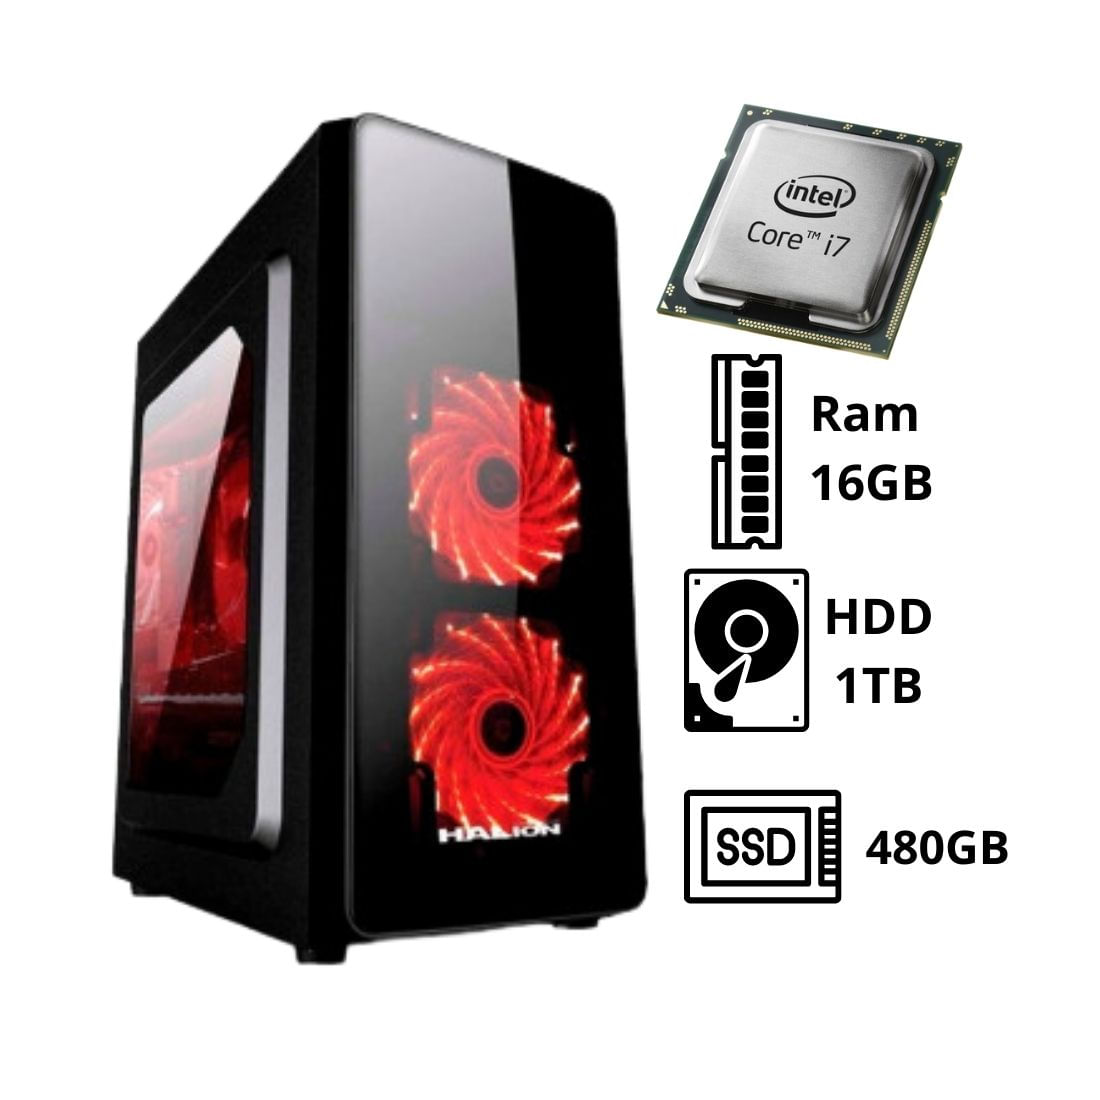 Computadora PC Intel CORE I7 3.4 GHZ RAM 16GB HDD 1TB SSD 480GB